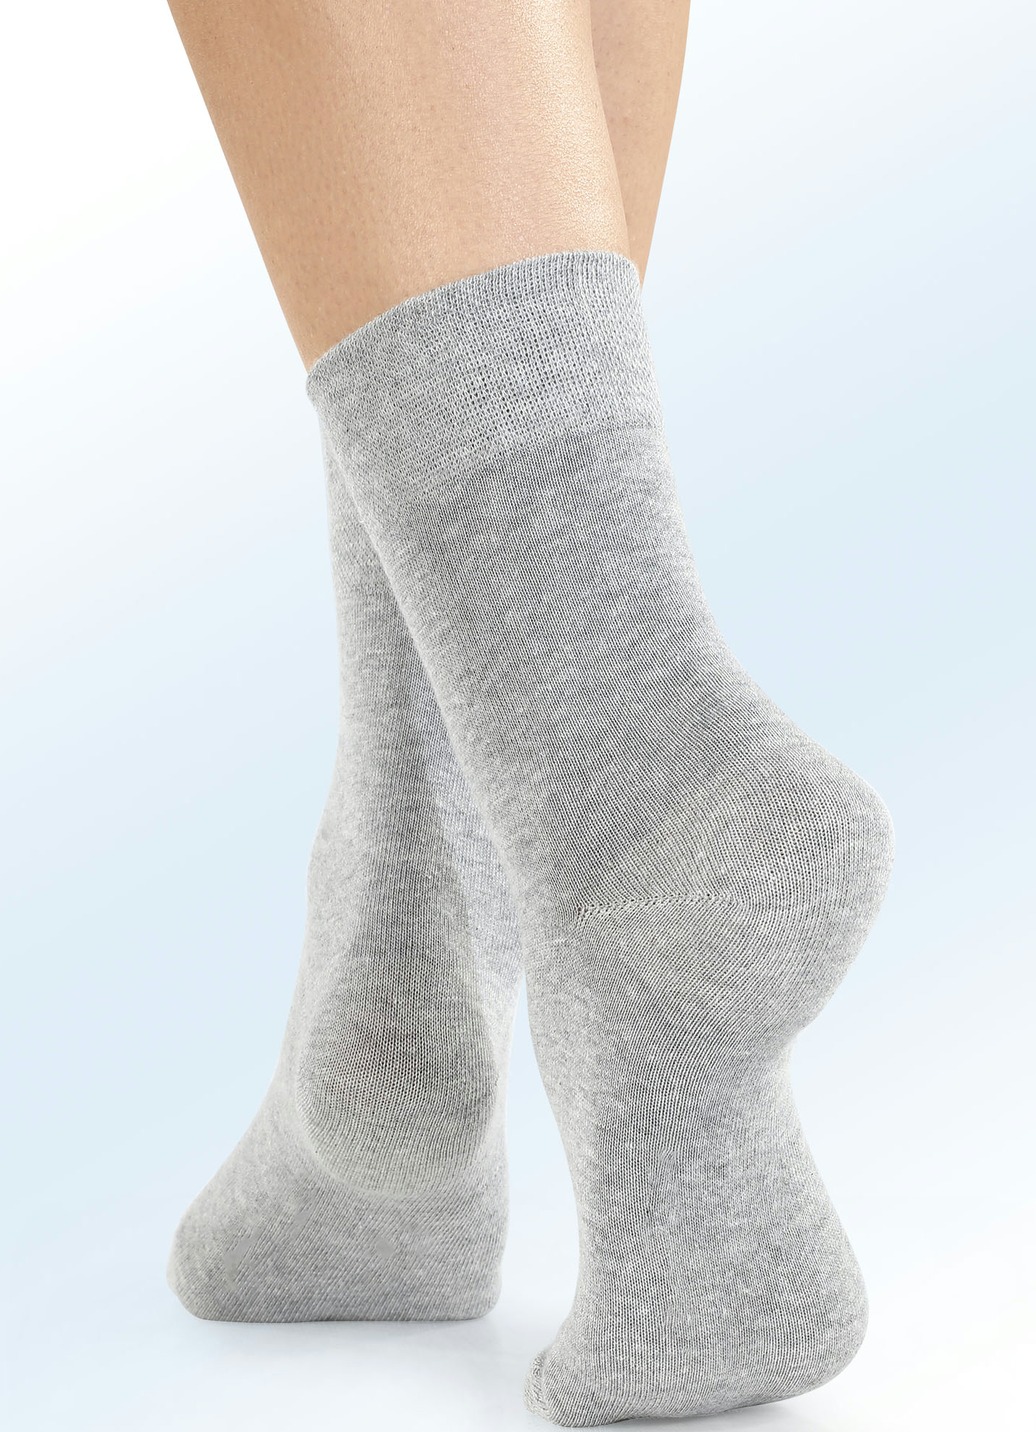 Viererpack Socken mit BIO-Baumwolle, 2X Silbergrau Meliert, 2X Anthrazit Meliert, Größe 1 (Schuhgr. 35-38) von BADER